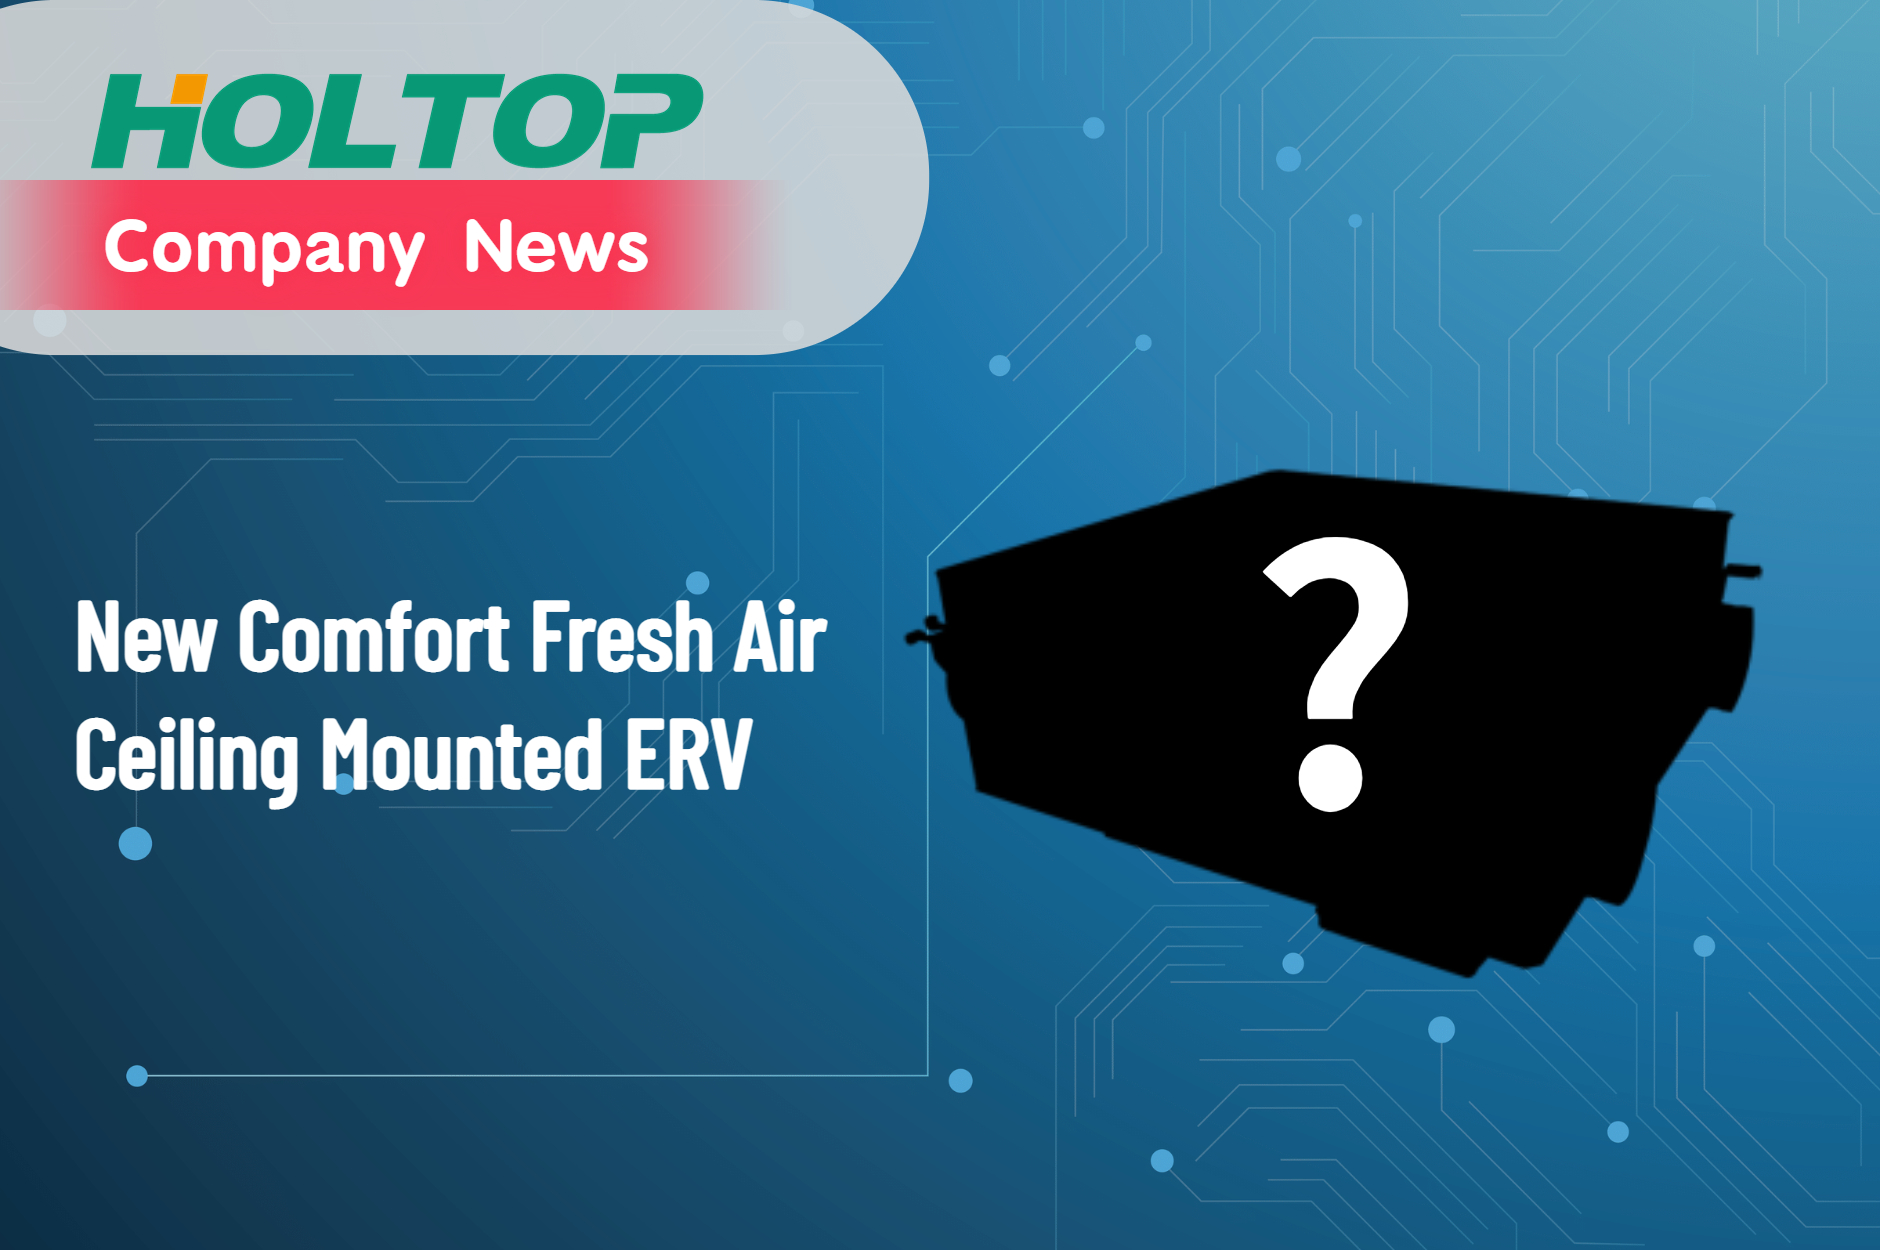 Anúncio de novo produto — ERV montado no teto da série Holtop Comfort